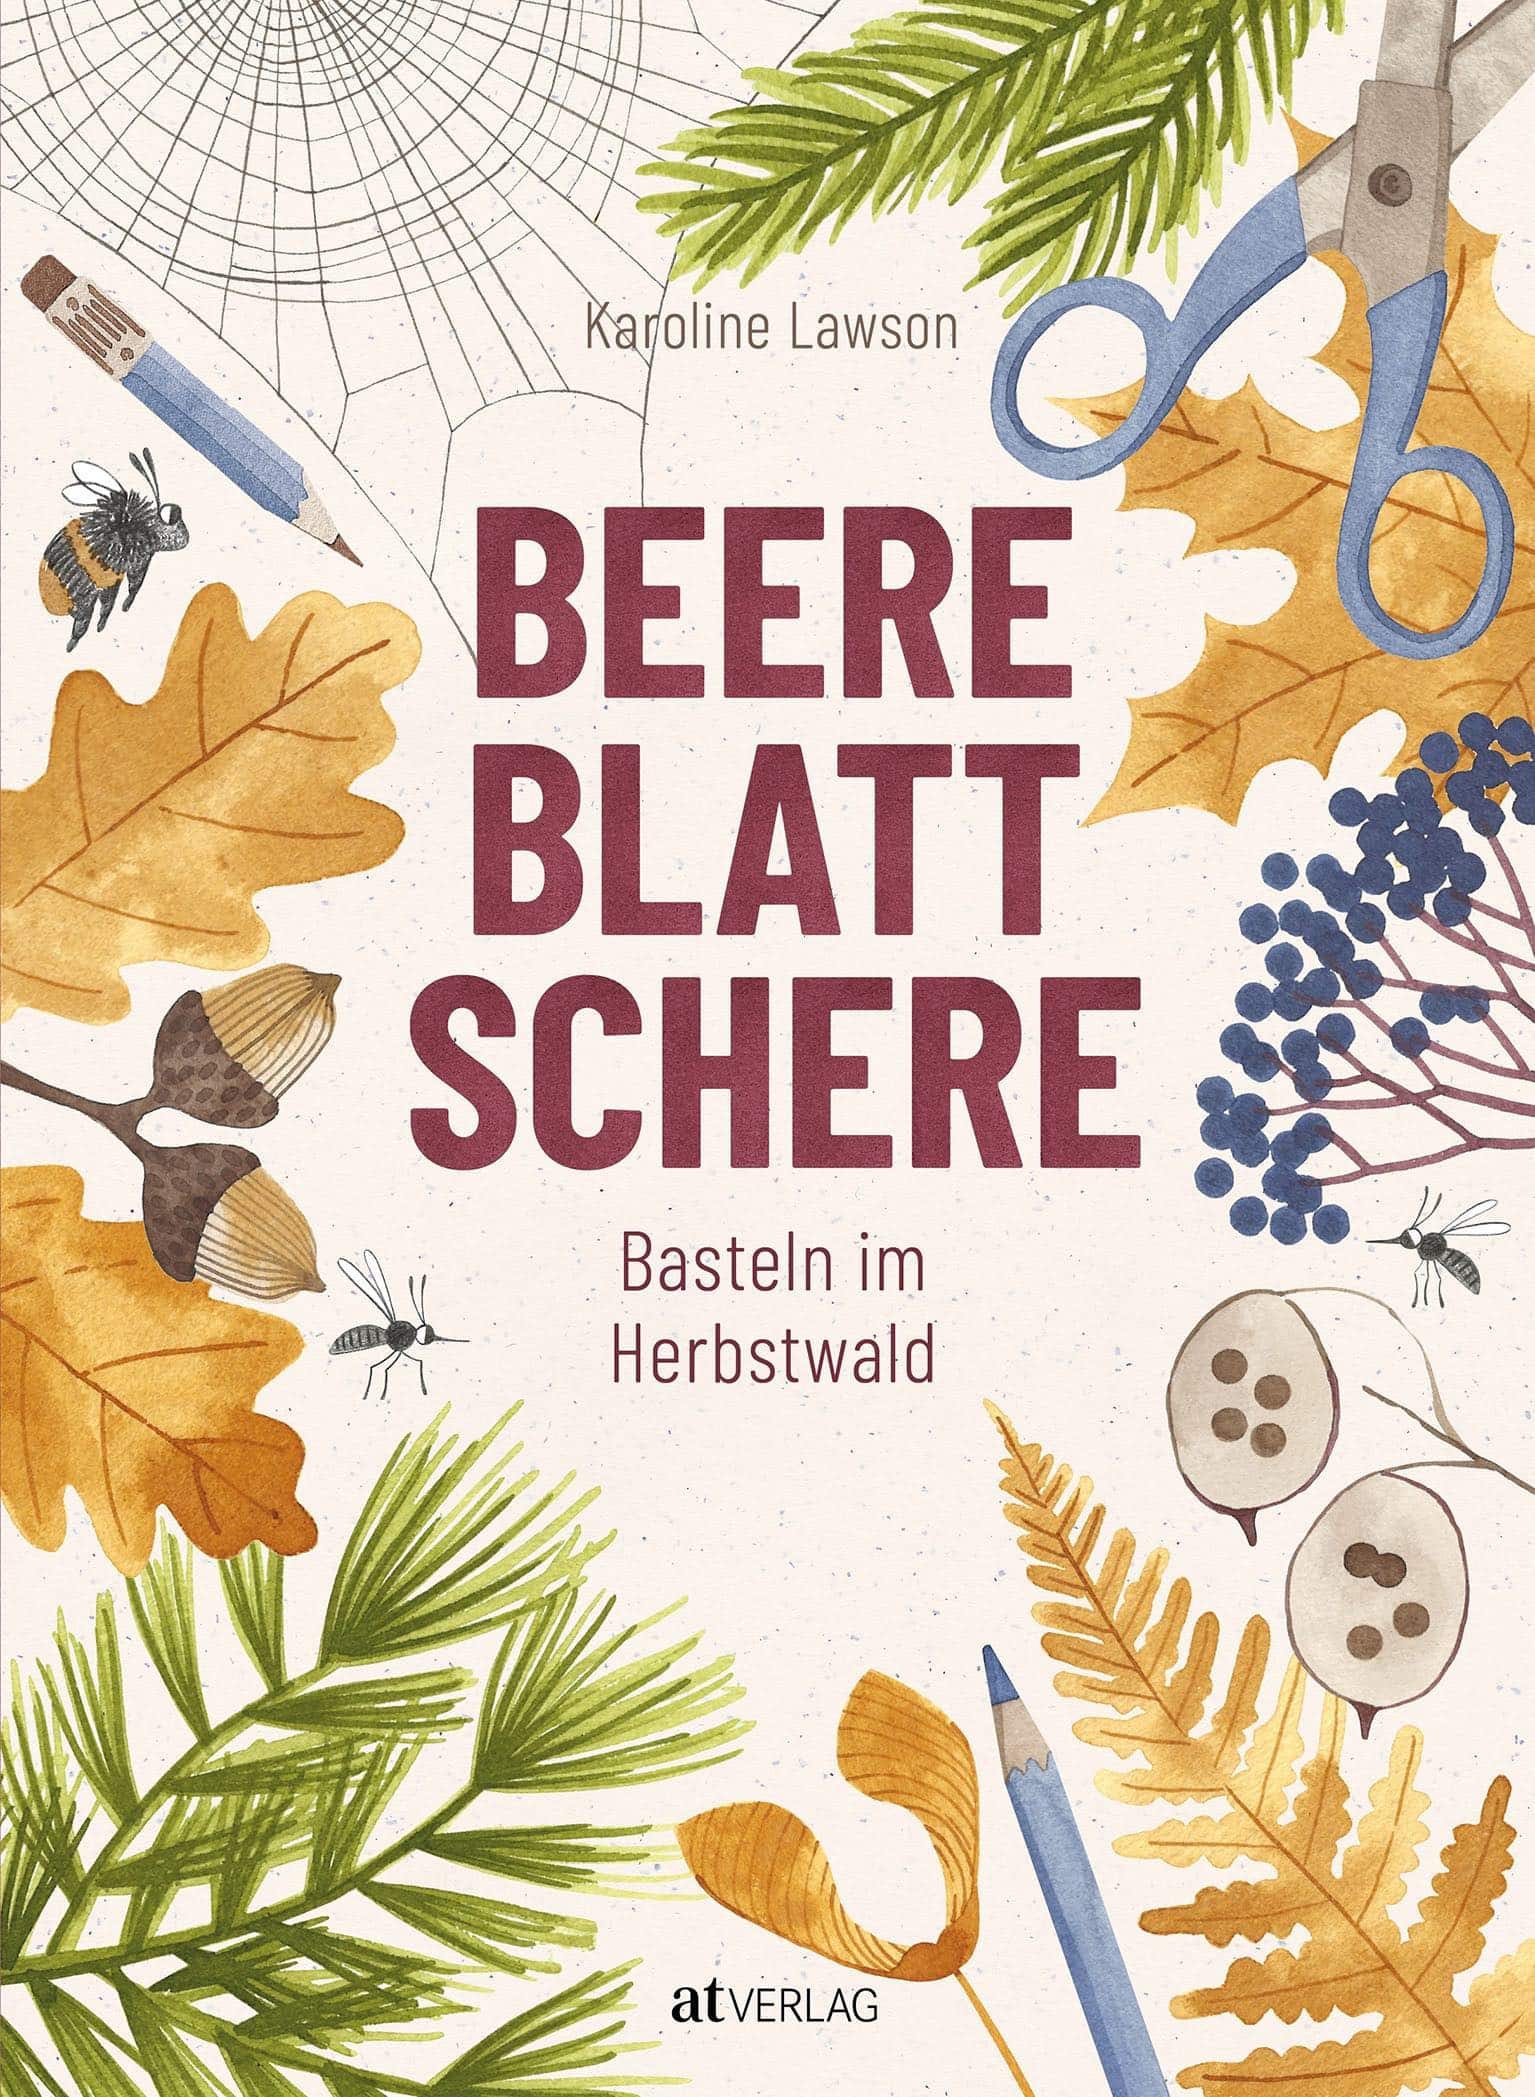 Herbstliches Basteln Mit Kindern Und Naturmaterialien: Rindenmaske Aus Baumrinde // Himbeer